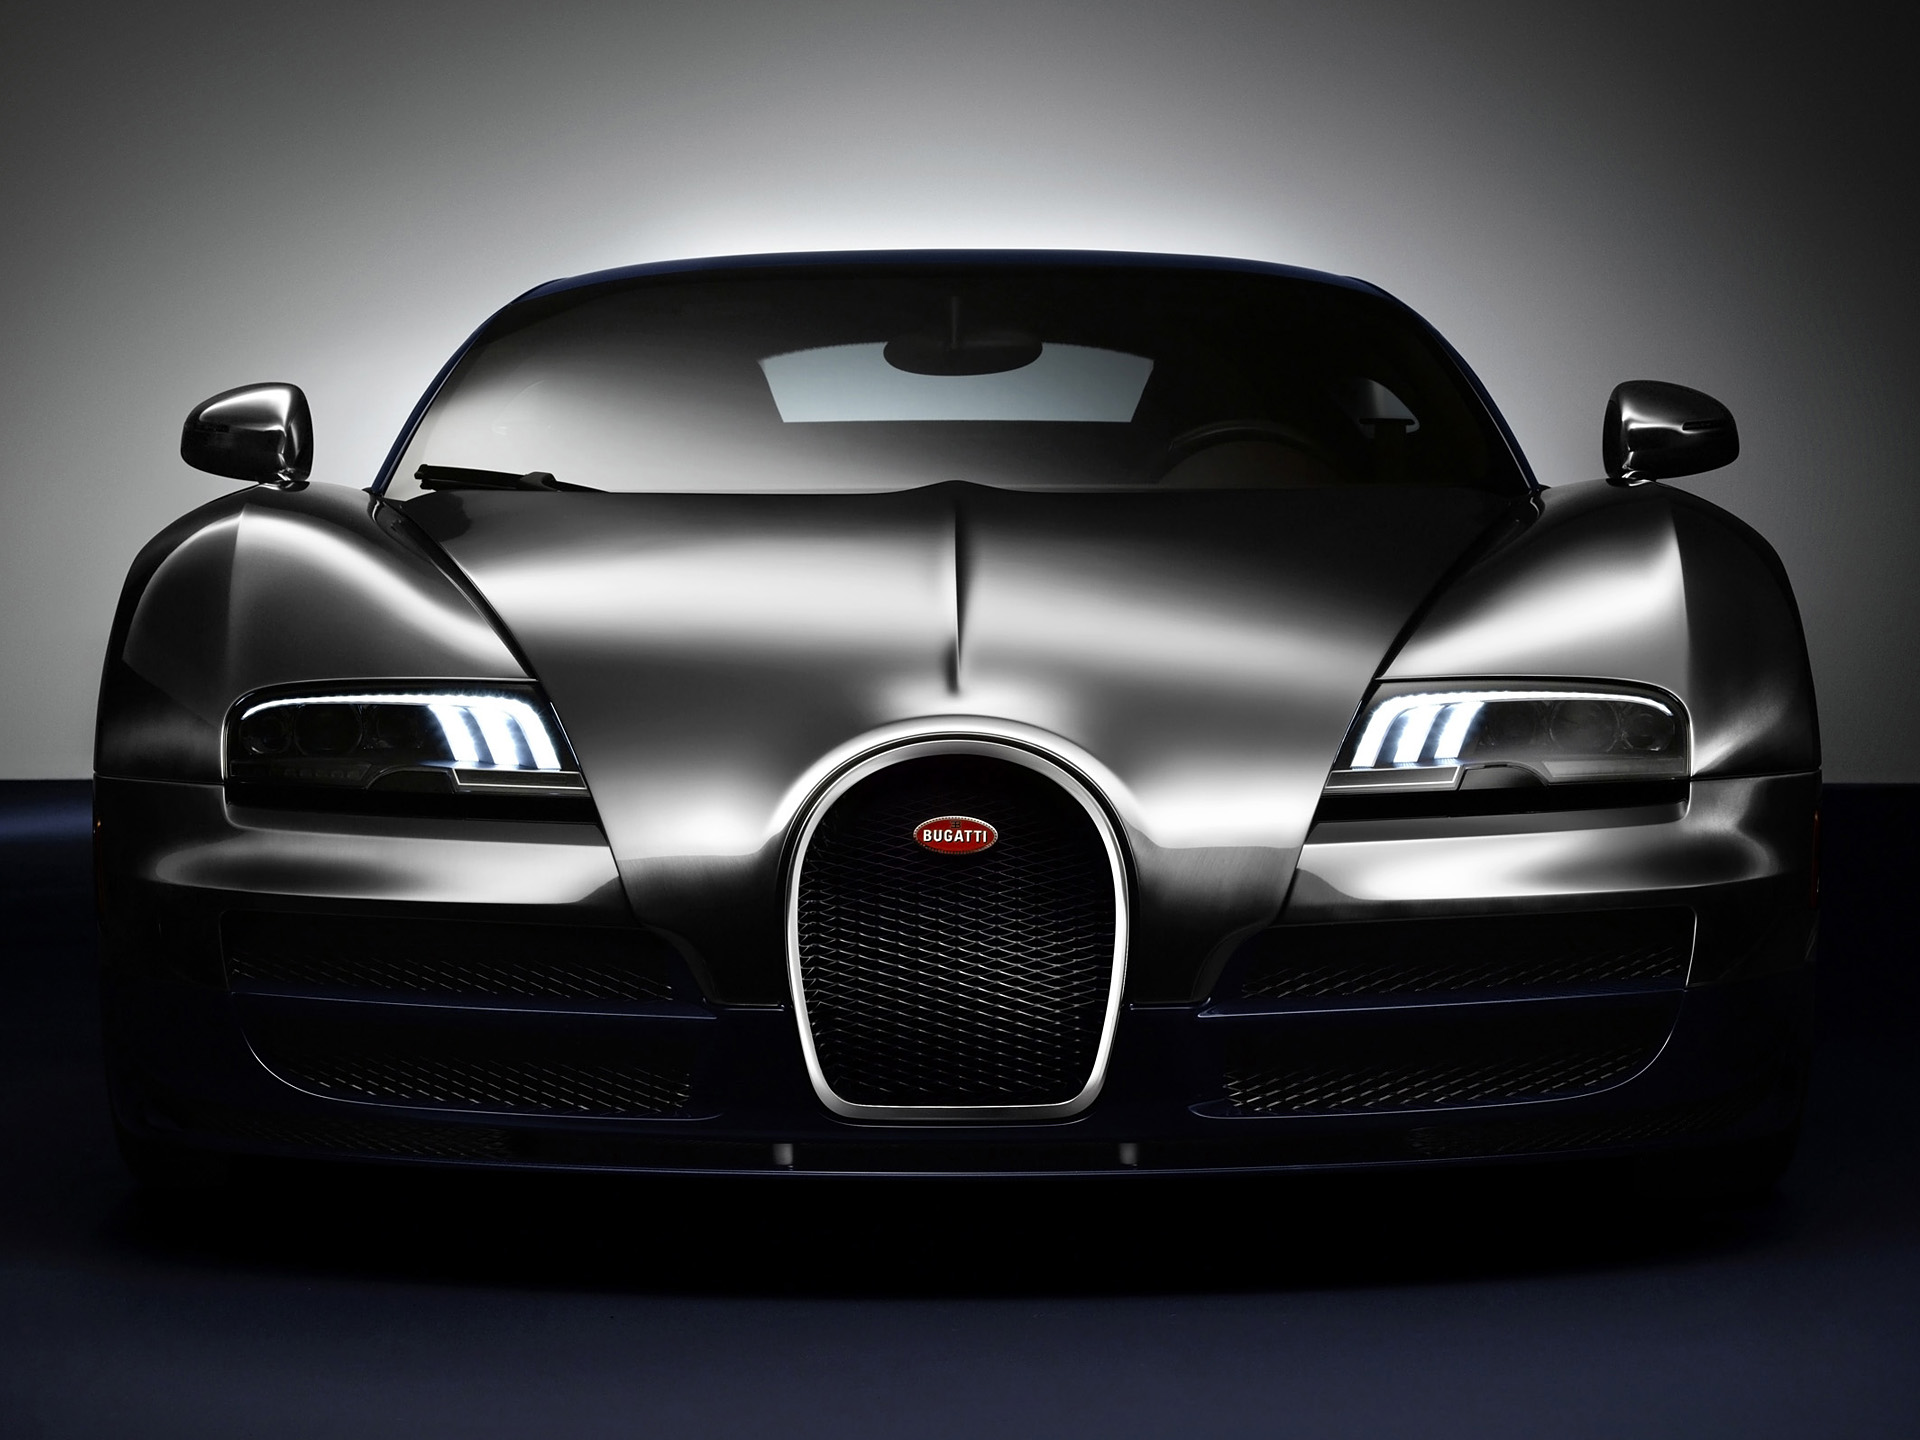  2014 Bugatti Veyron Ettore Bugatti Wallpaper.